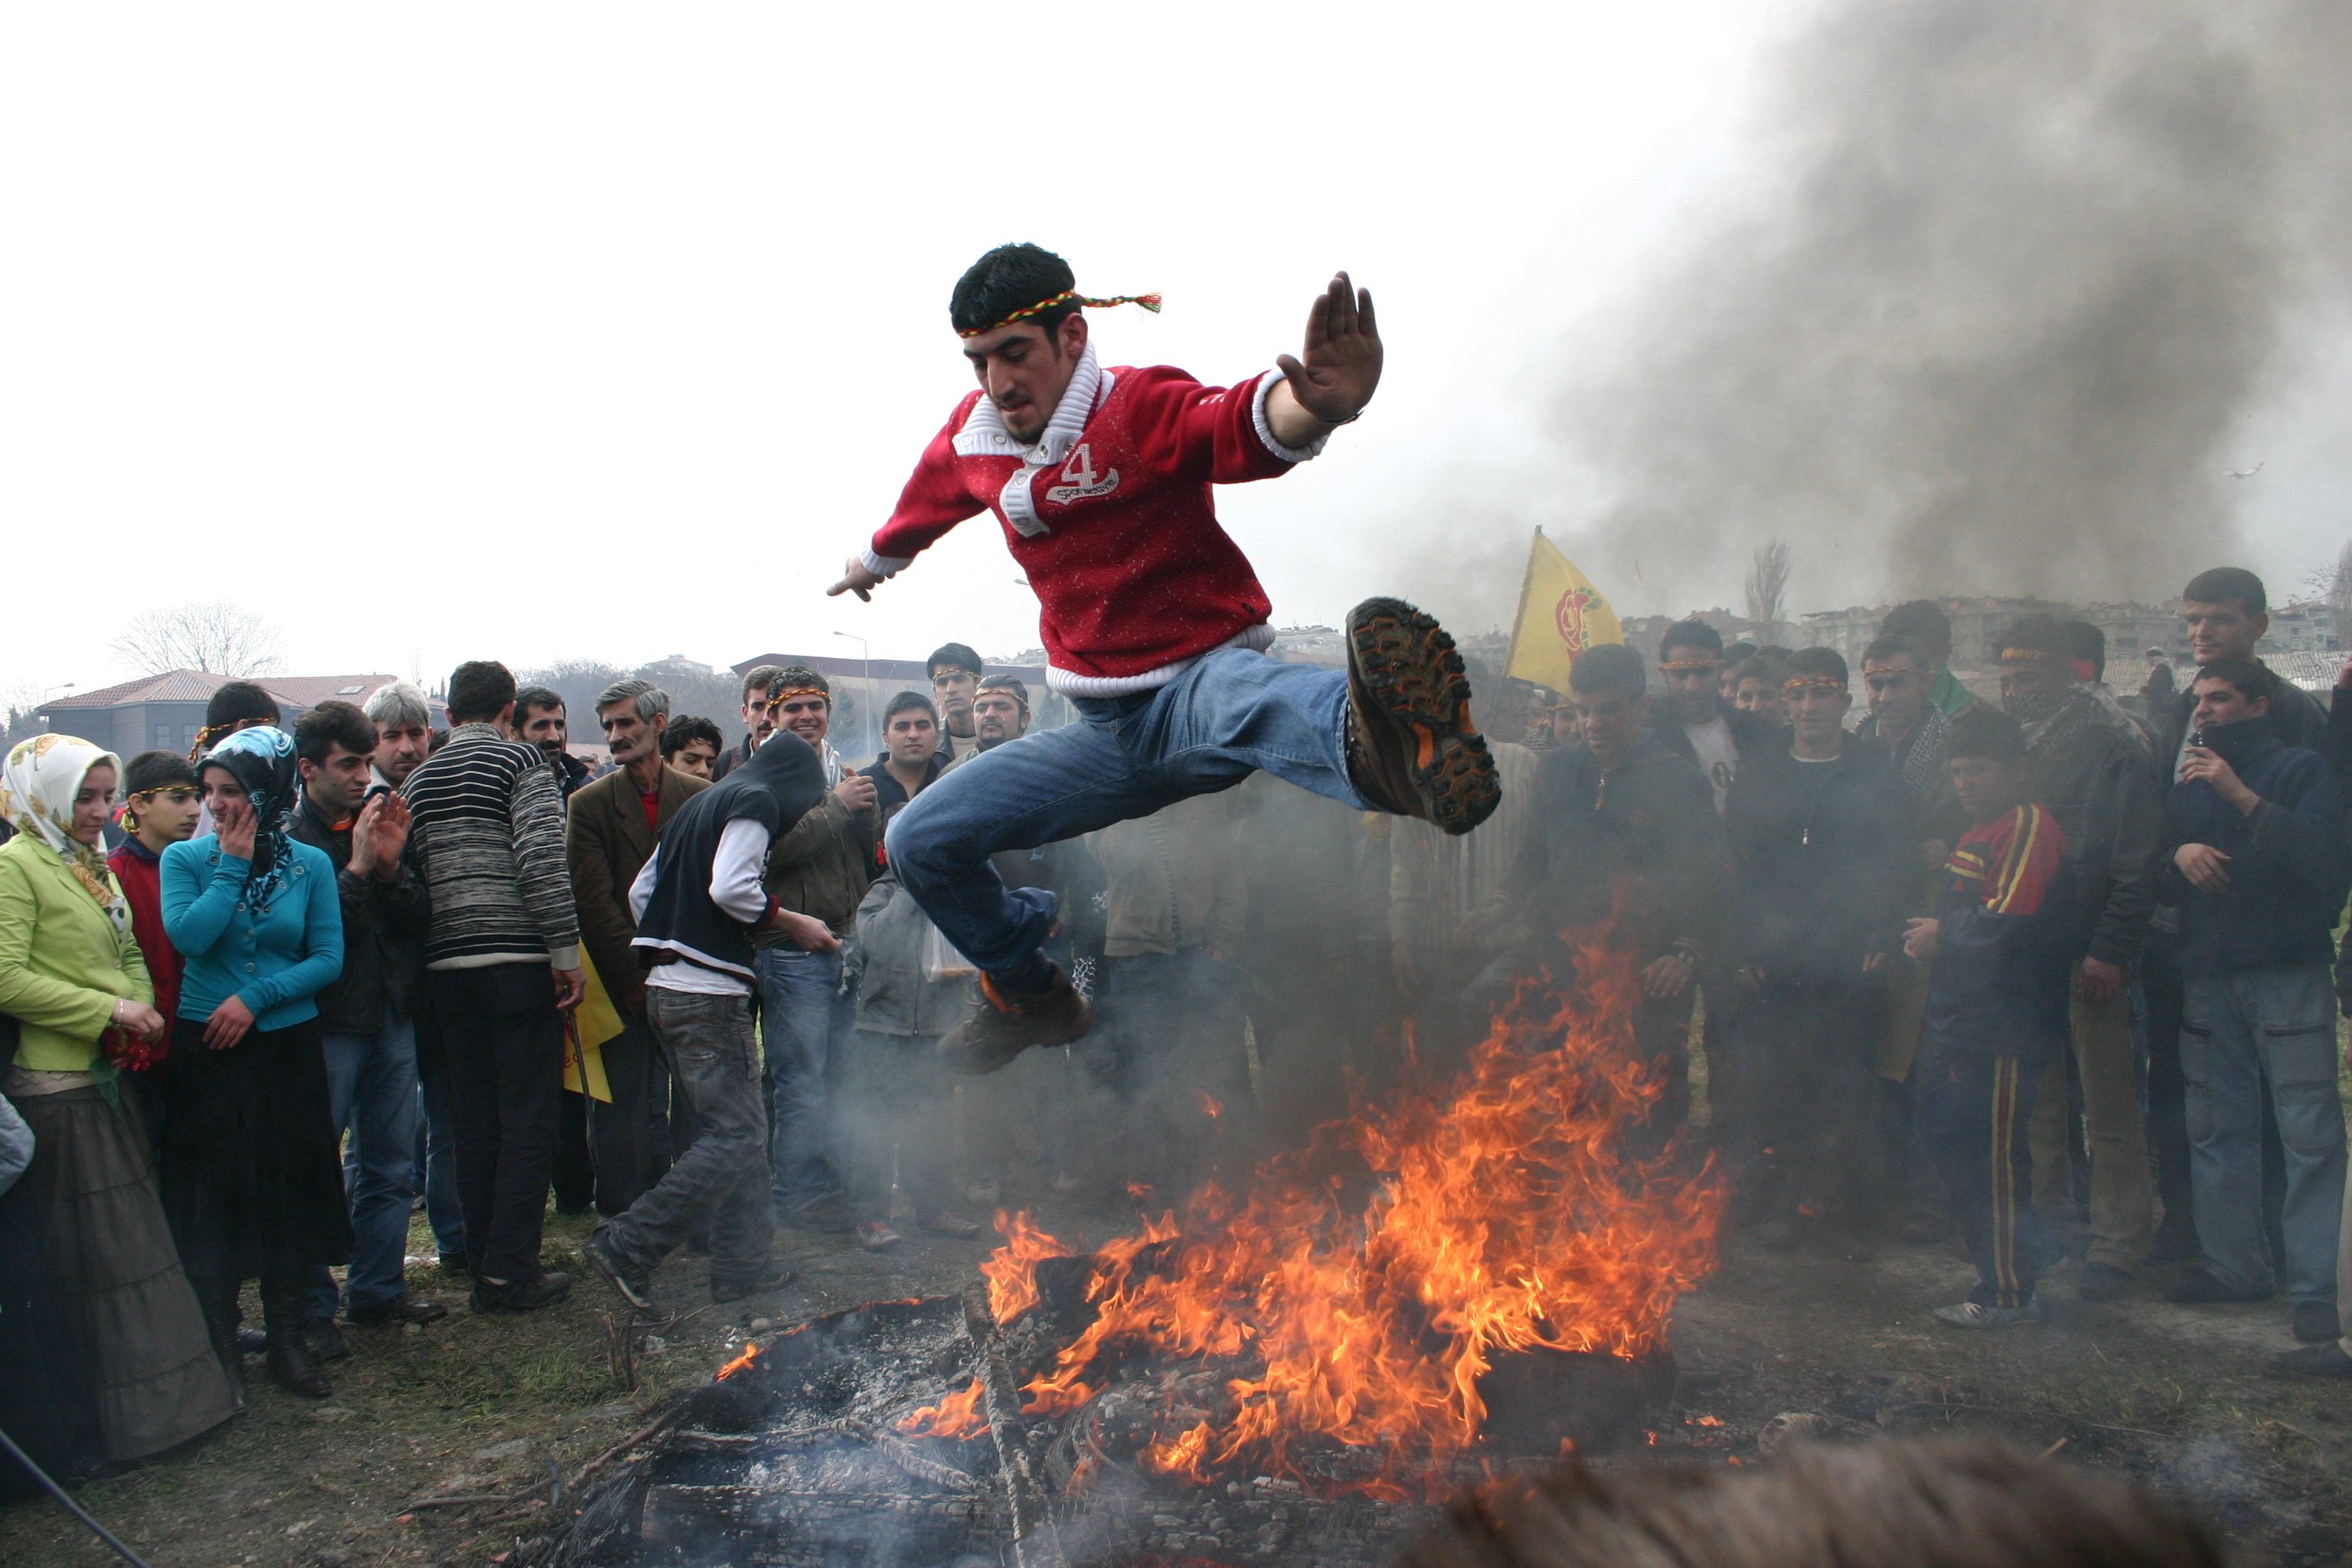 يشعلون النيران في الشوارع وقمم الجبال للاحتفال الأكراد ثقافة غني ة بالأساطير والأعياد المميزة